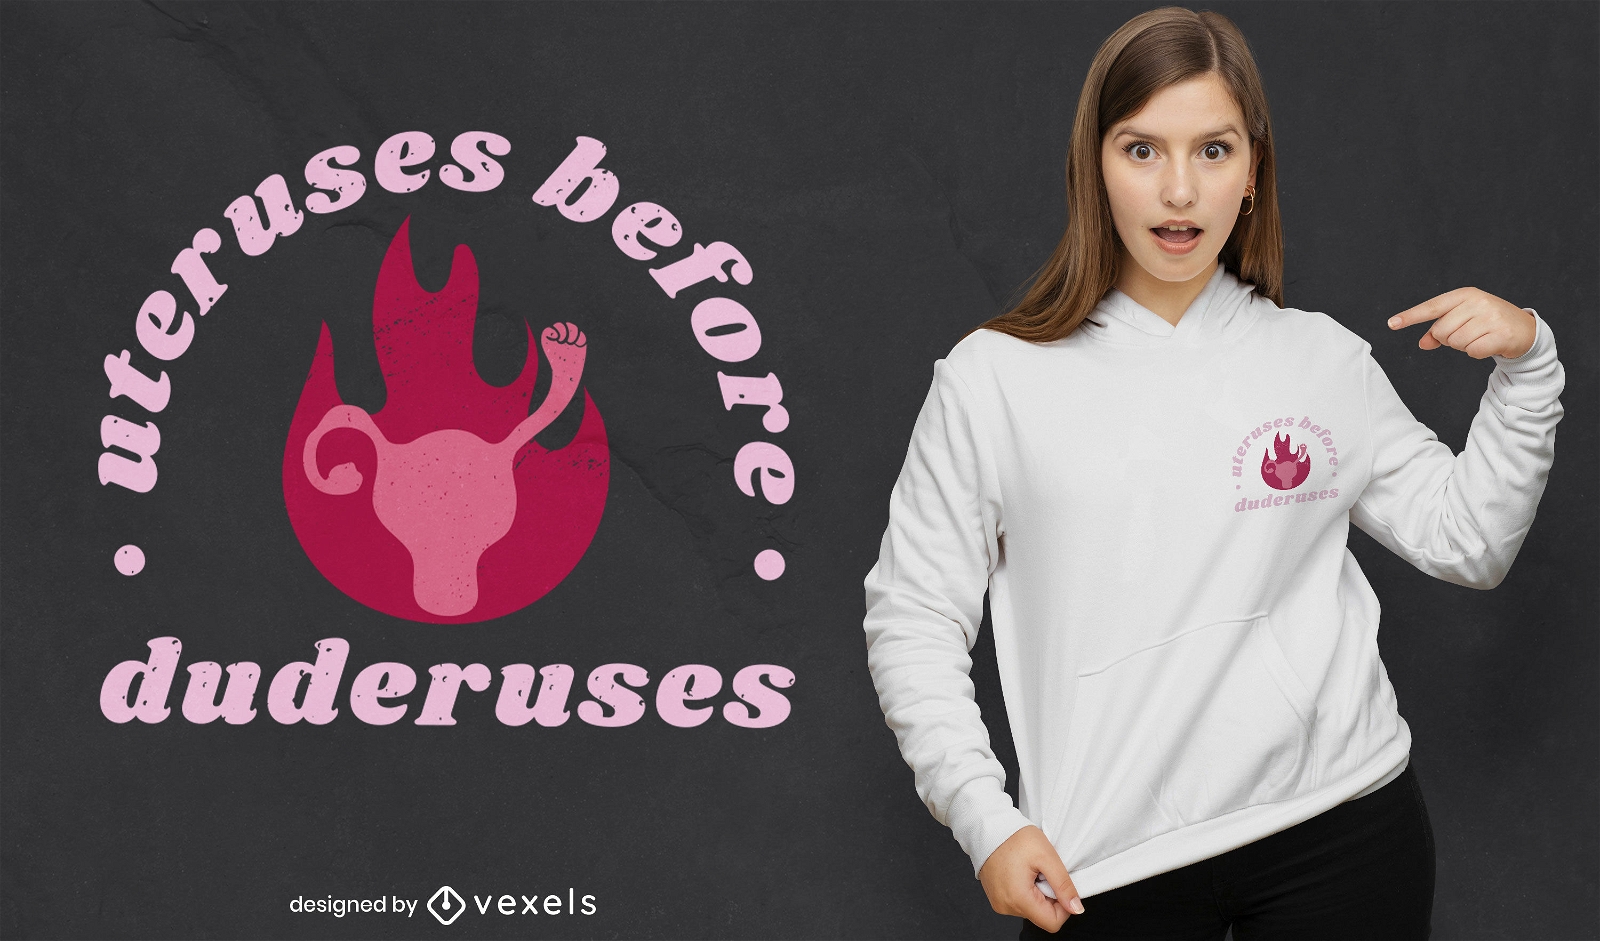 Uterus funny quote feminism t-shirt design